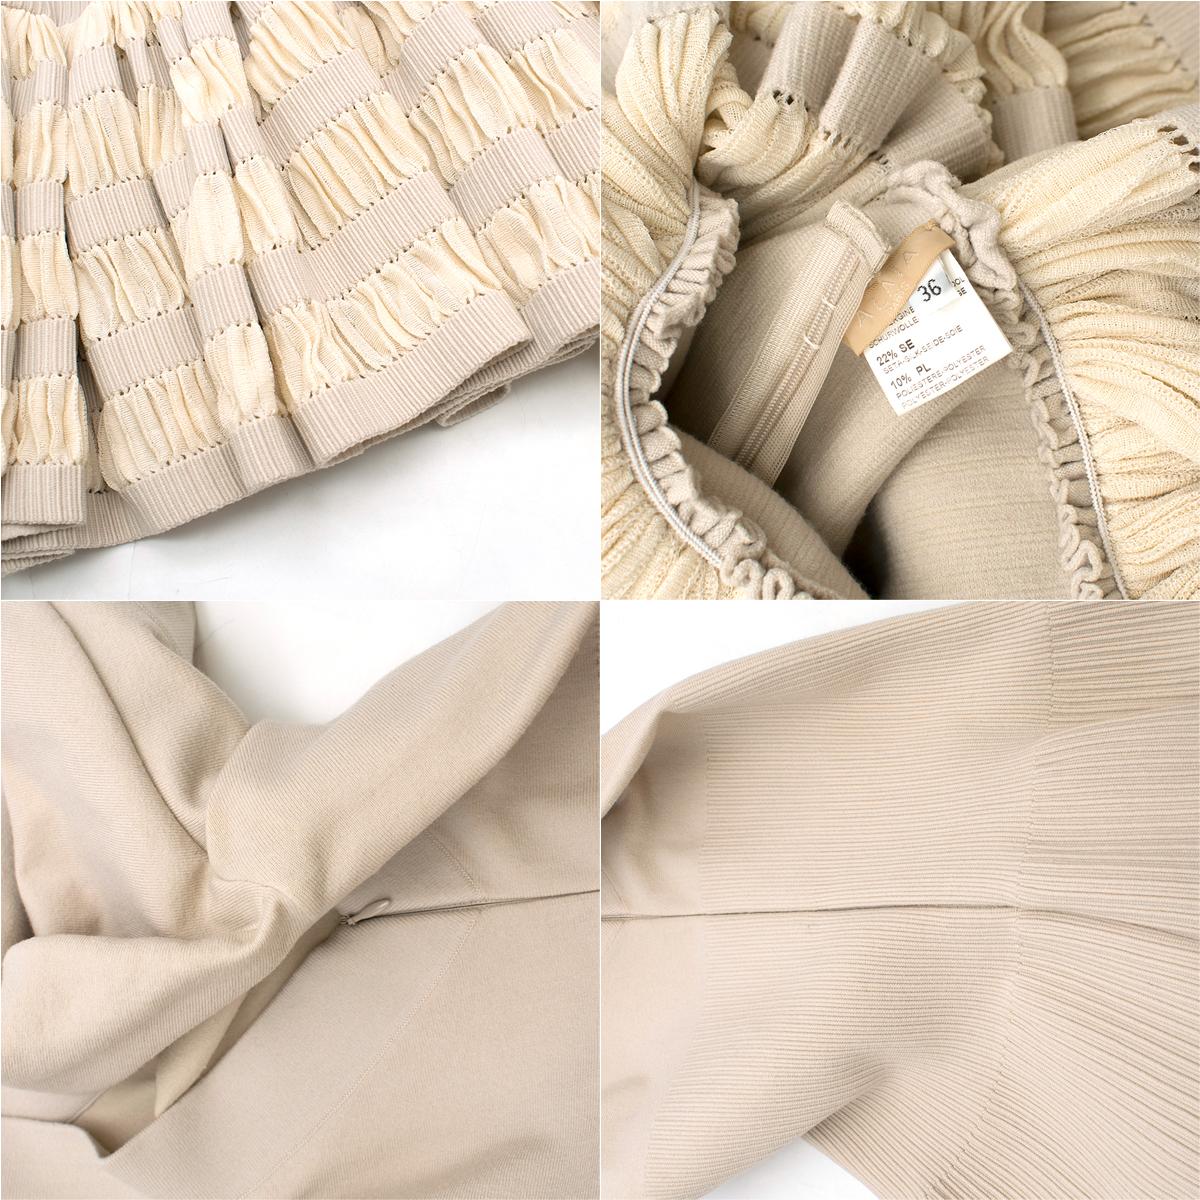 Alaia Ruffle Skirt Wool blend Knit Dress 36 FR 4